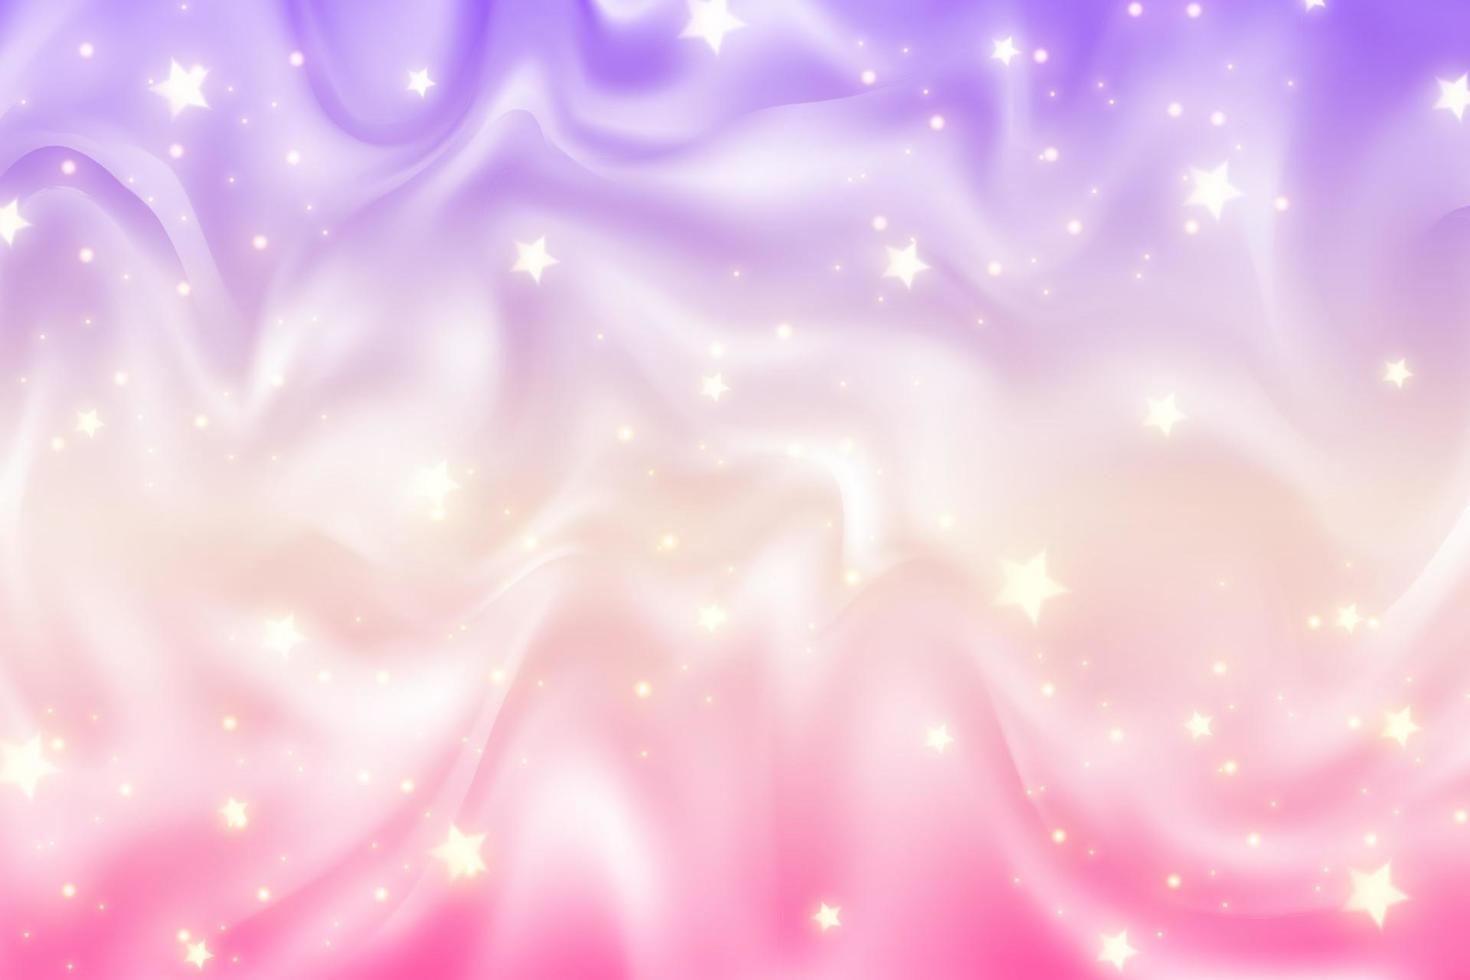 fundo de unicórnio arco-íris. céu de cor gradiente ondulado pastel com glitter. espaço e estrelas fluidos mágicos da galáxia. ilustração abstrata em vetor. vetor